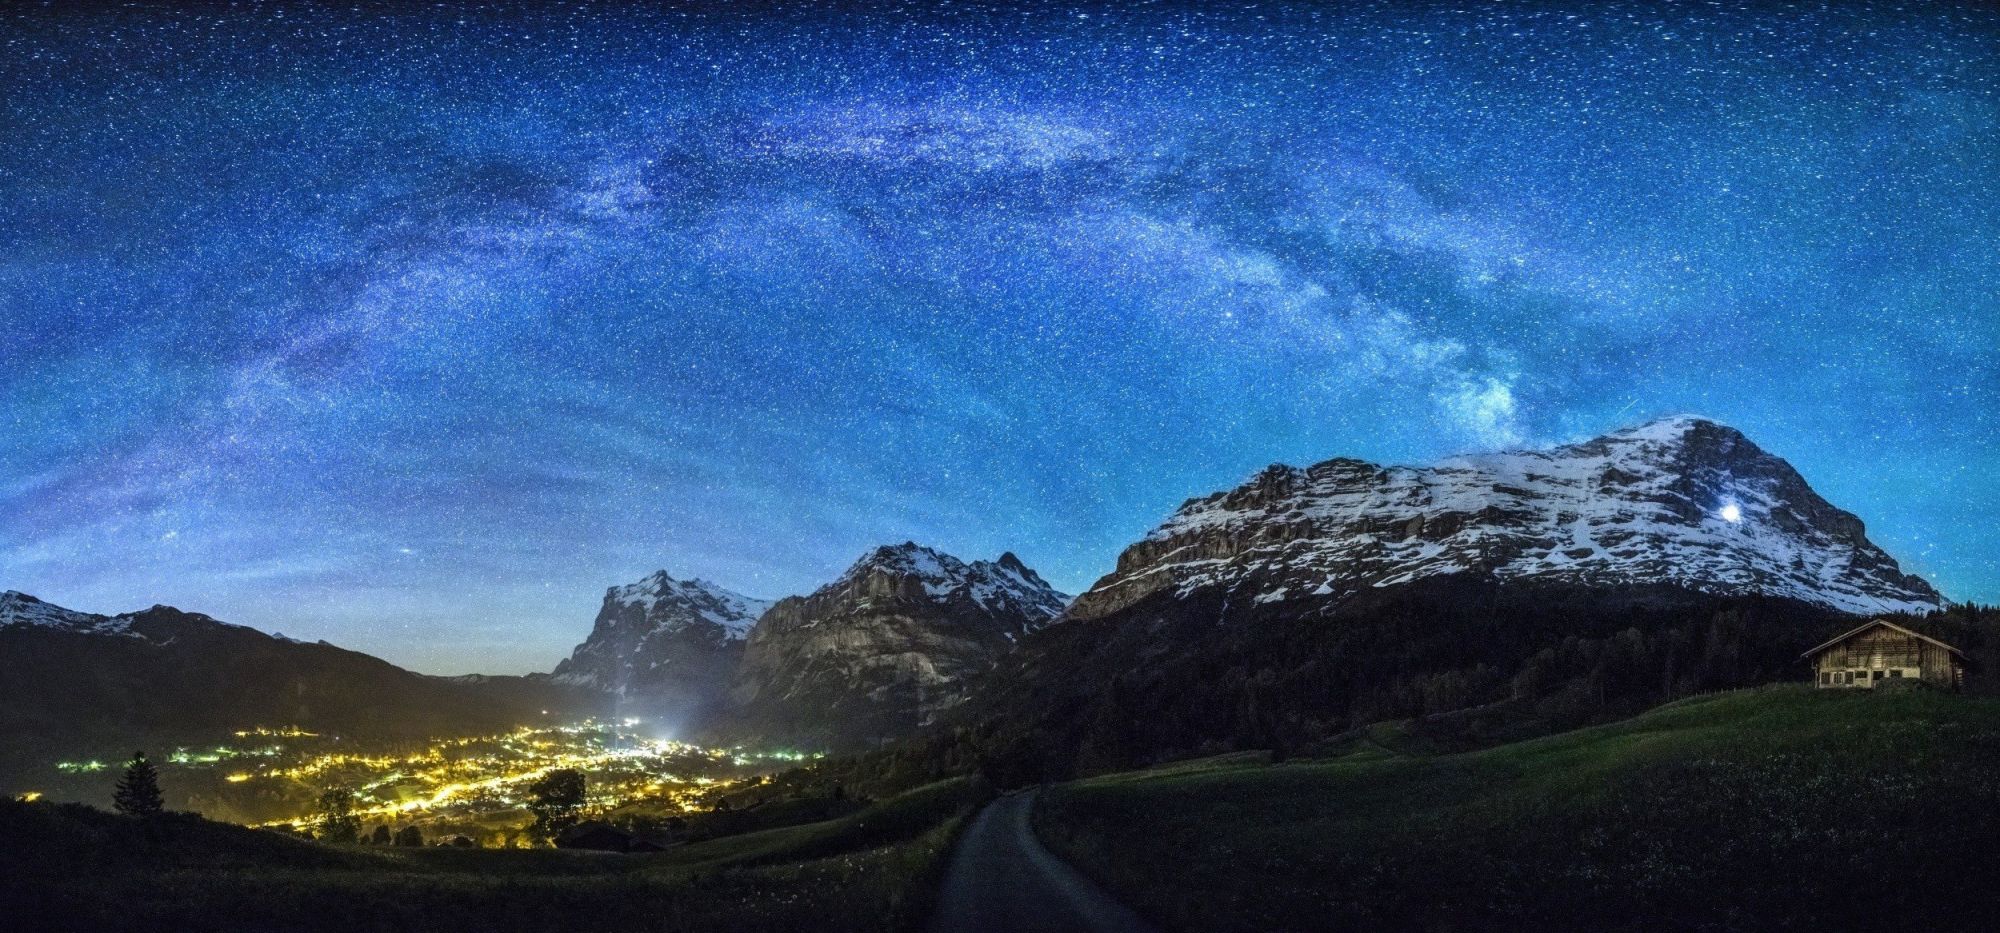 Млечный путь Швейцария